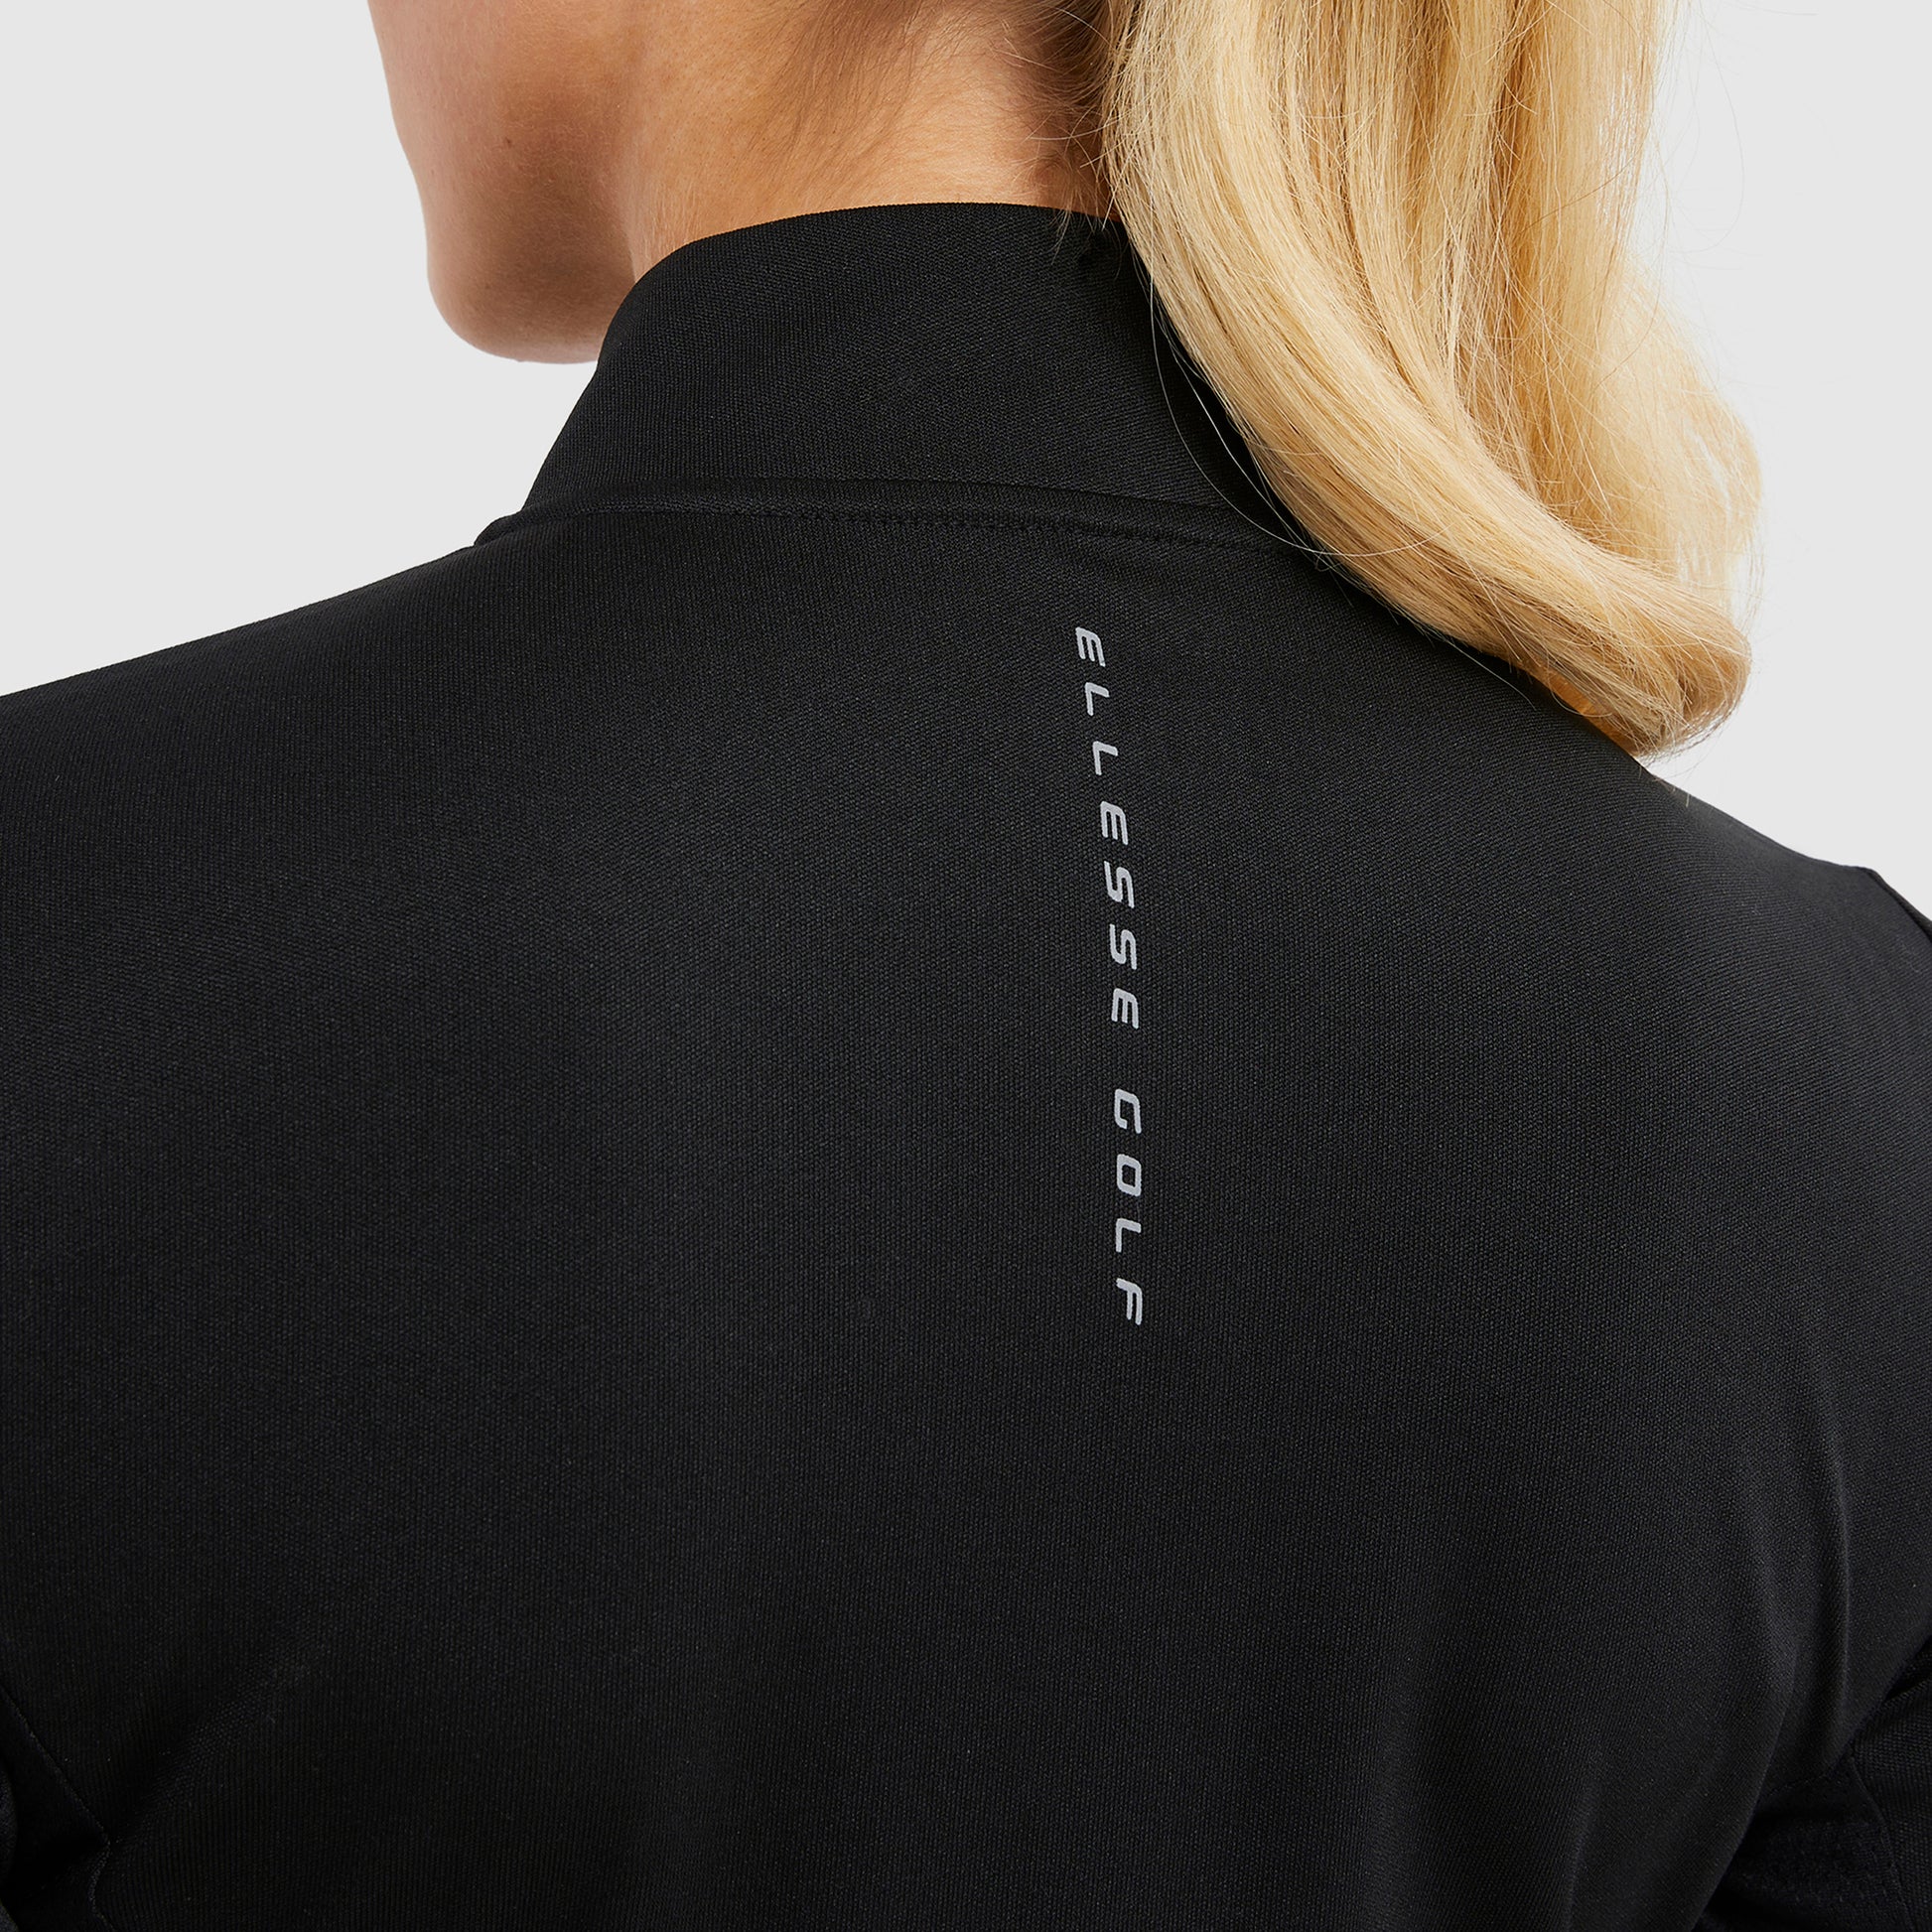 Ellesse Ladies Zip-Neck Top in Black with Mesh Panel Detail